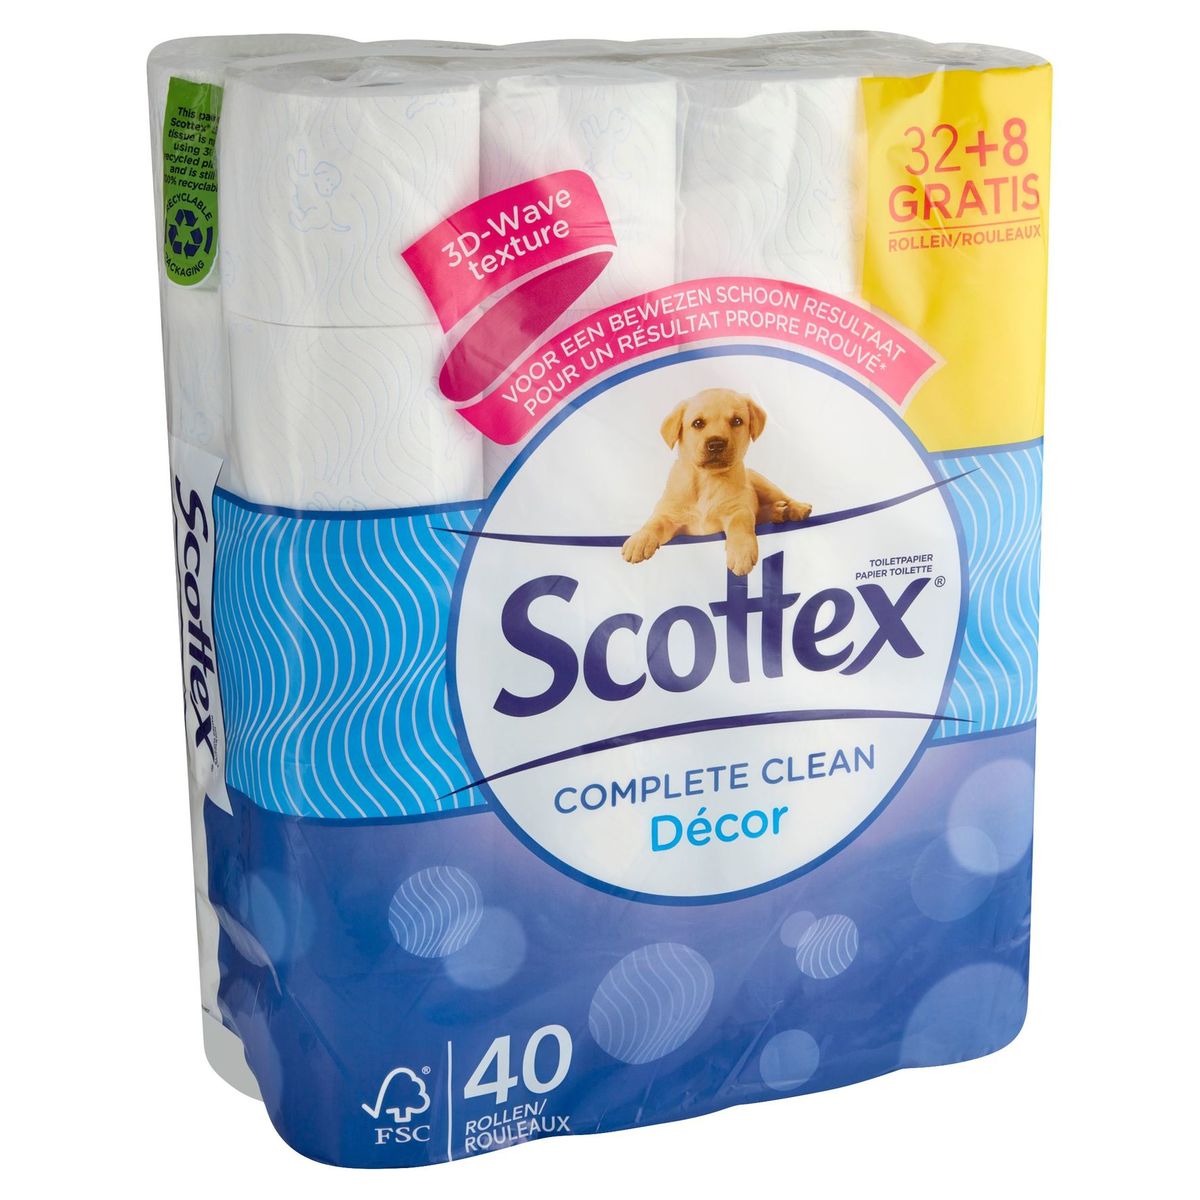 Scottex Papier Toilette Complete Clean Décor 32+8 Gratis Rouleux